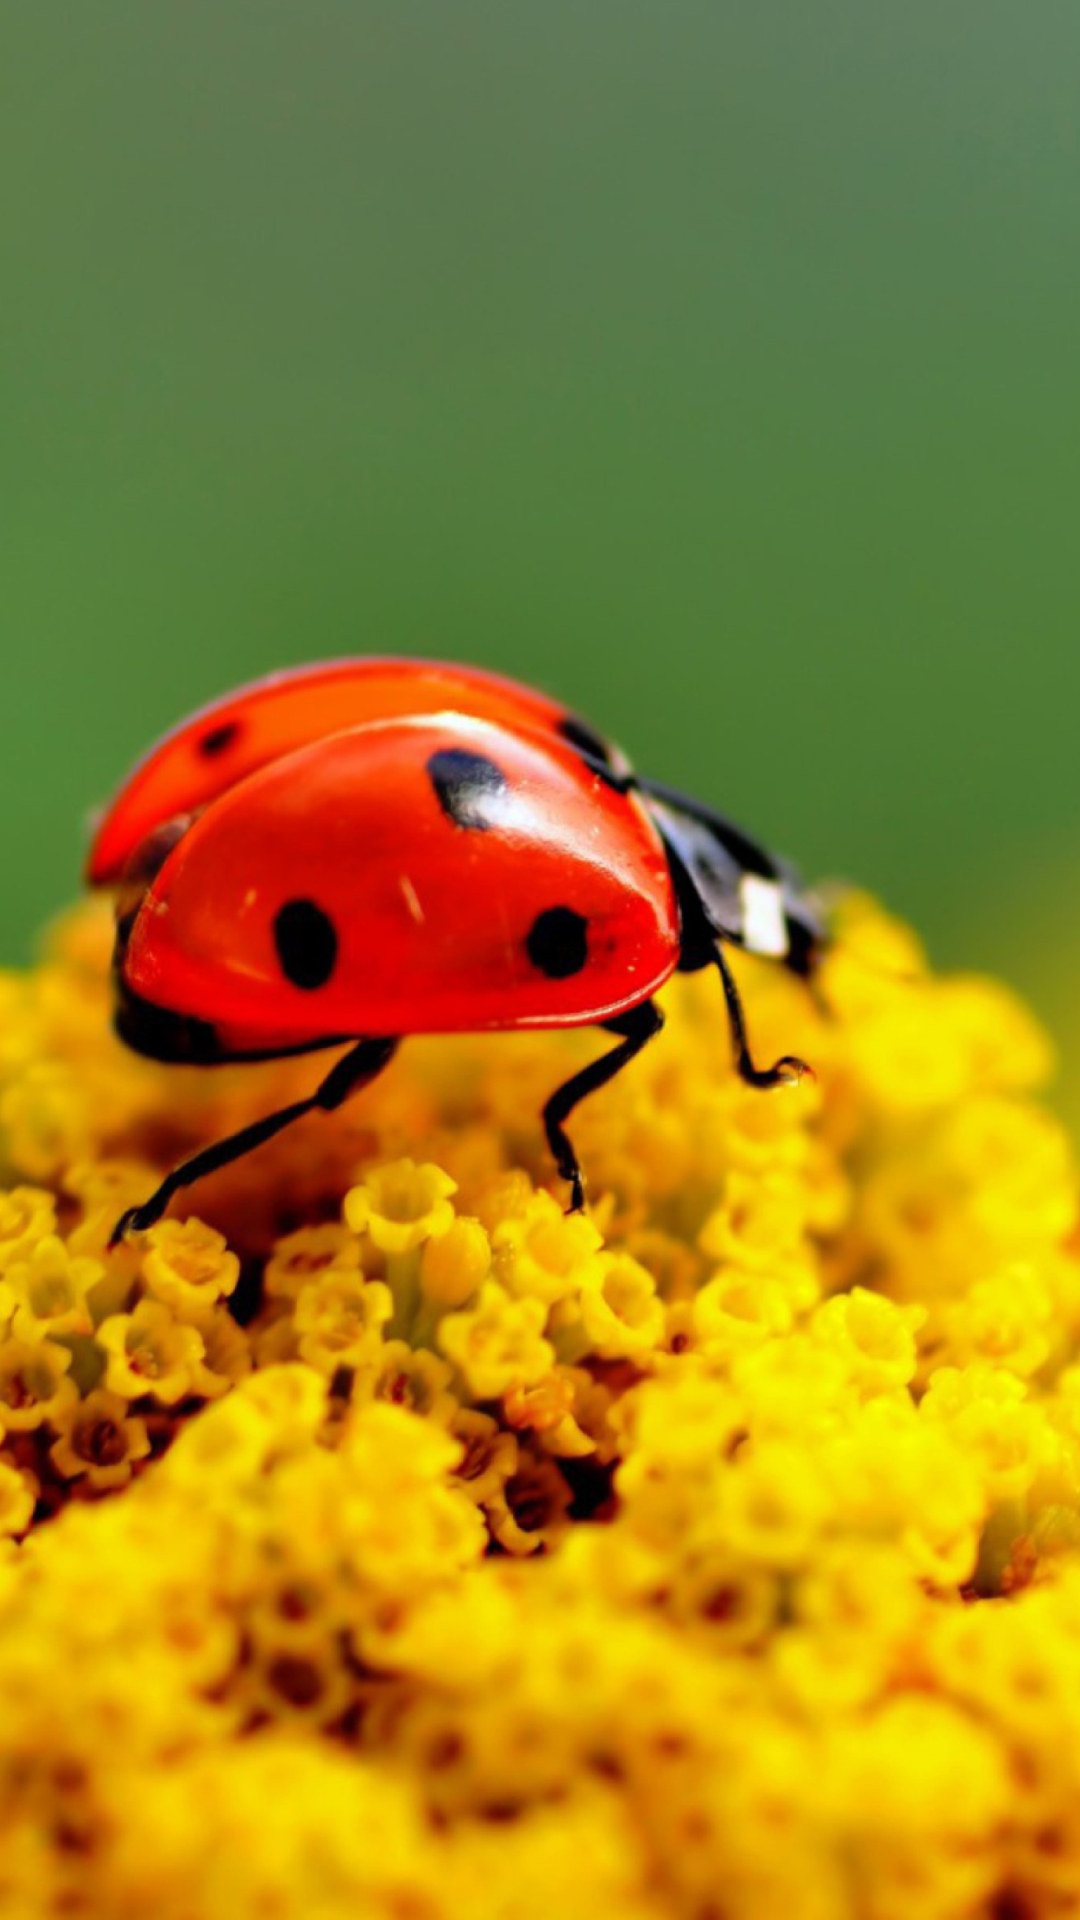 Ladybug On Yellow Flower screenshot #1 1080x1920